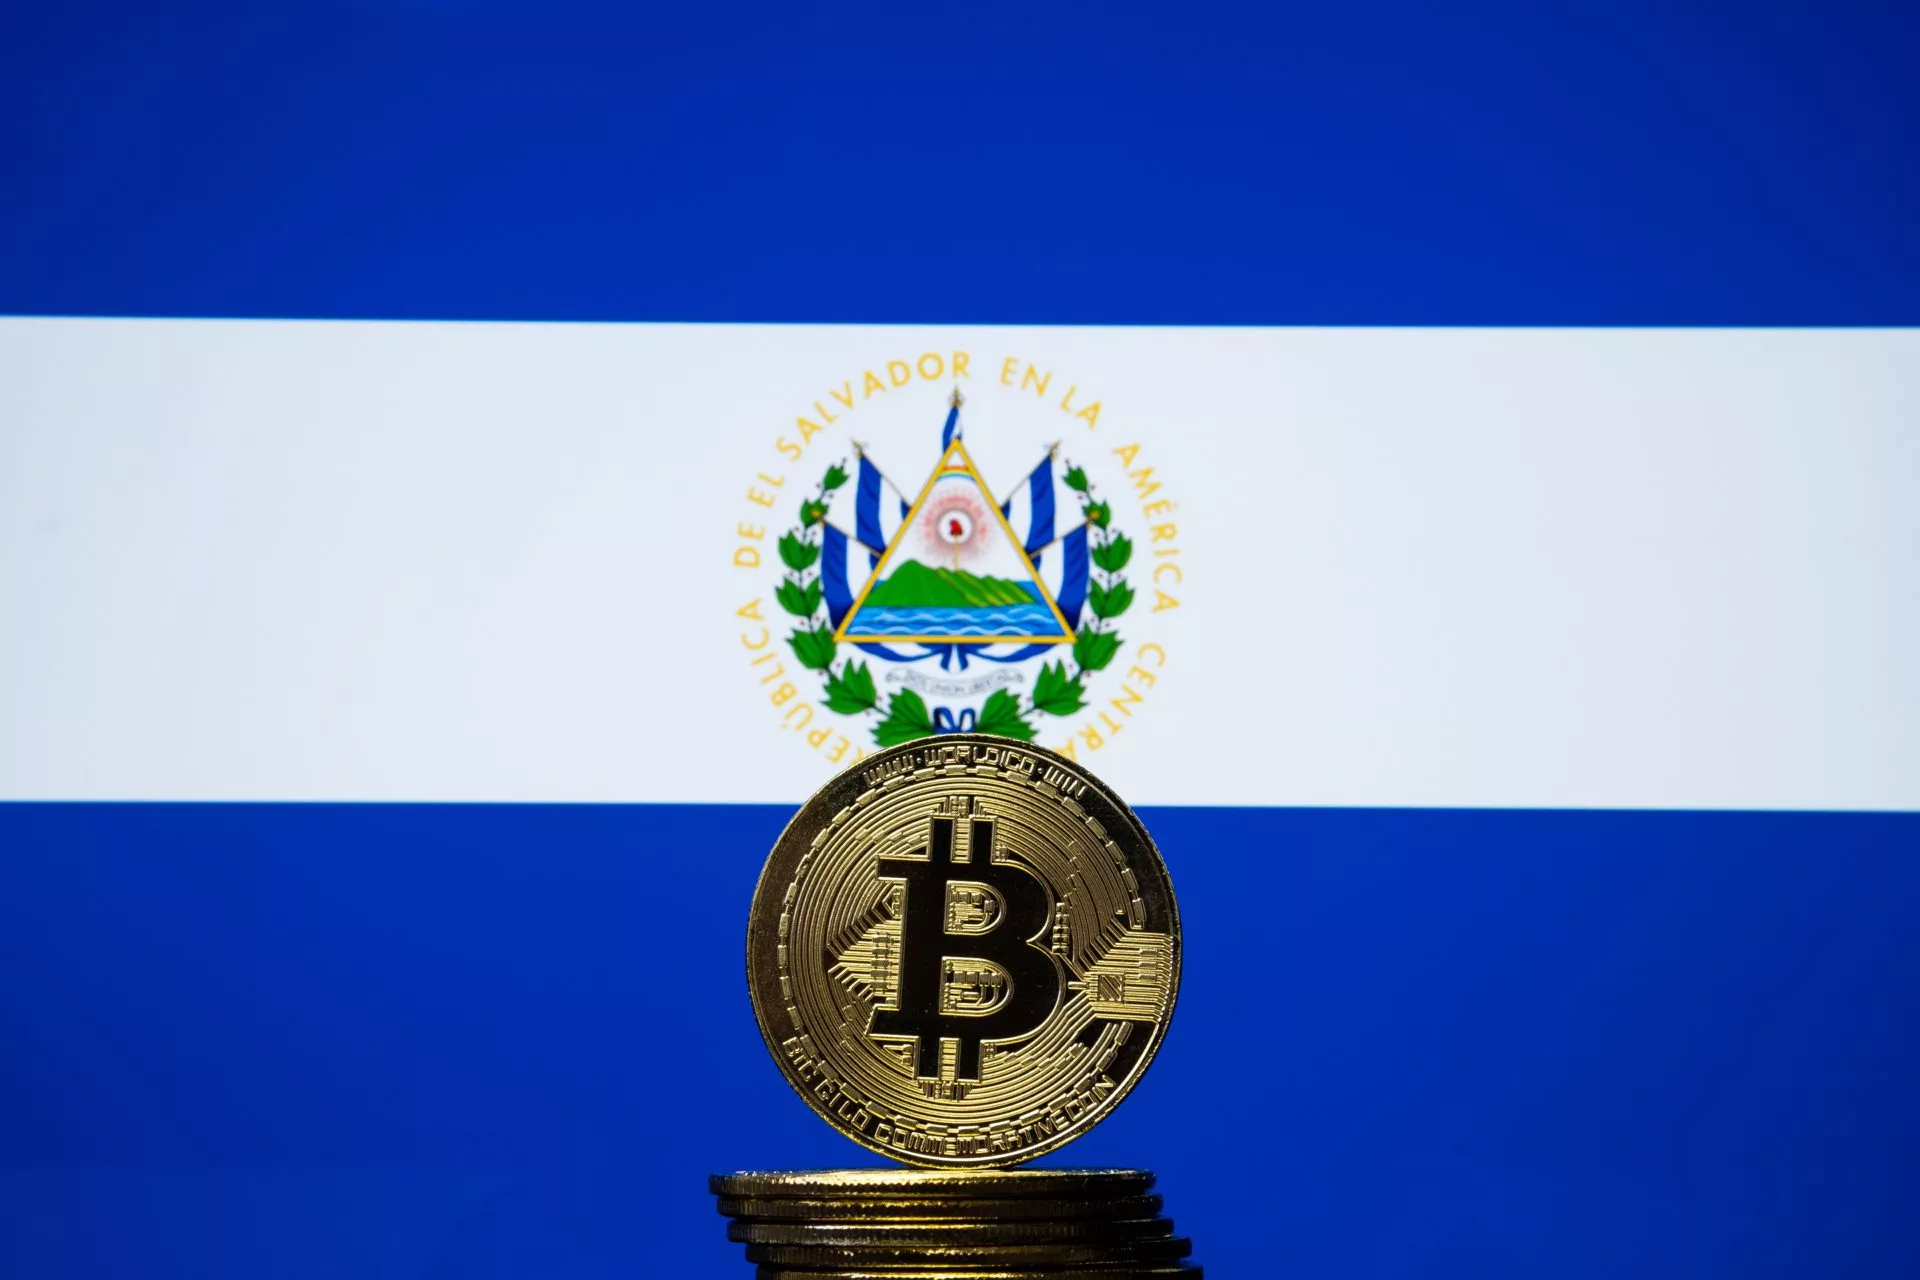 Chivo Bitcoin-wallet van El Salvador heeft ruim 500.000 gebruikers